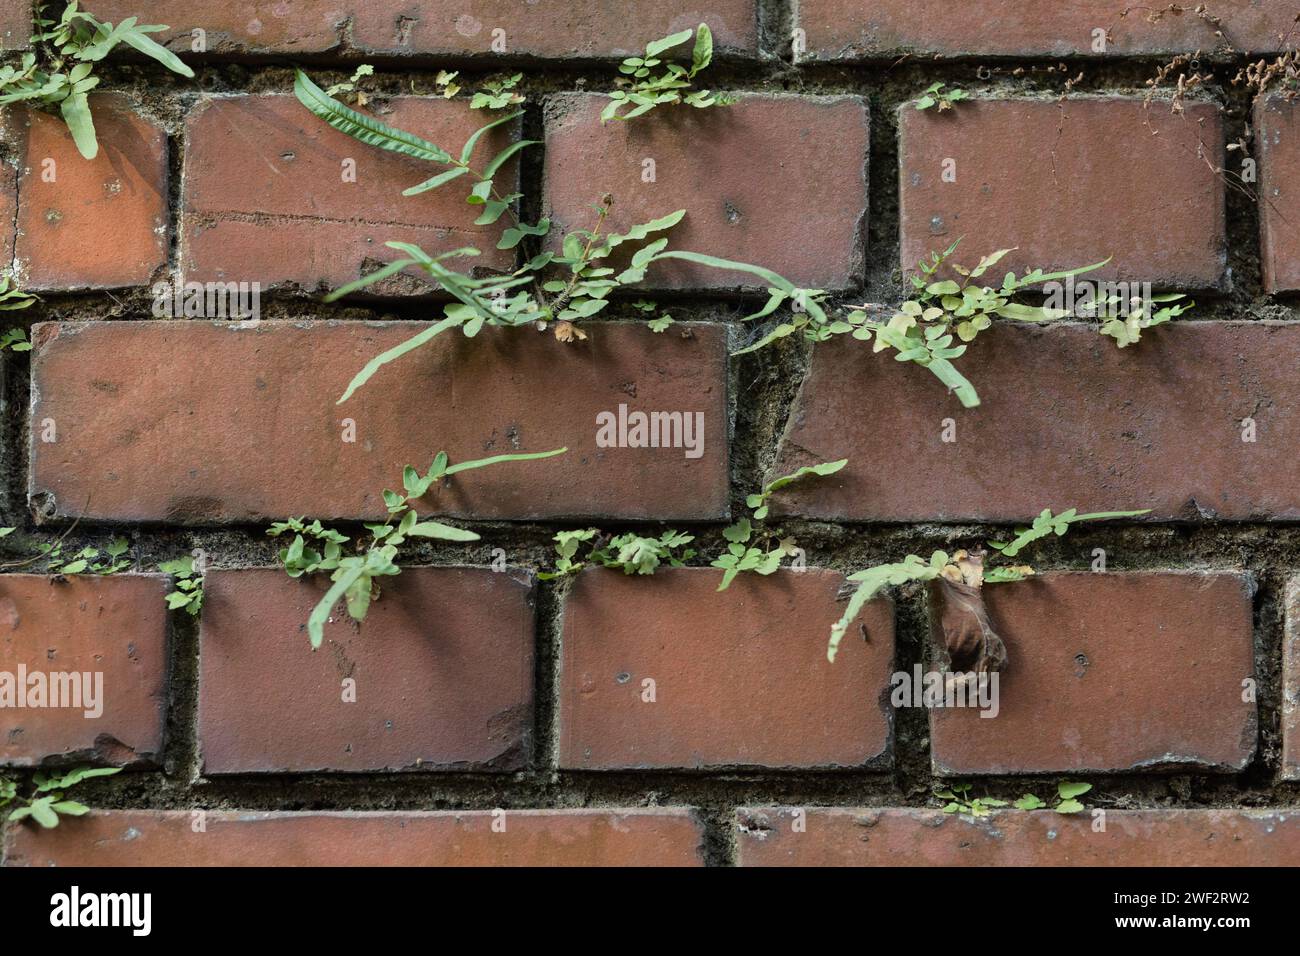 Ha interpretato un ruolo sorprendente Ferns in Brick Cities Foto Stock